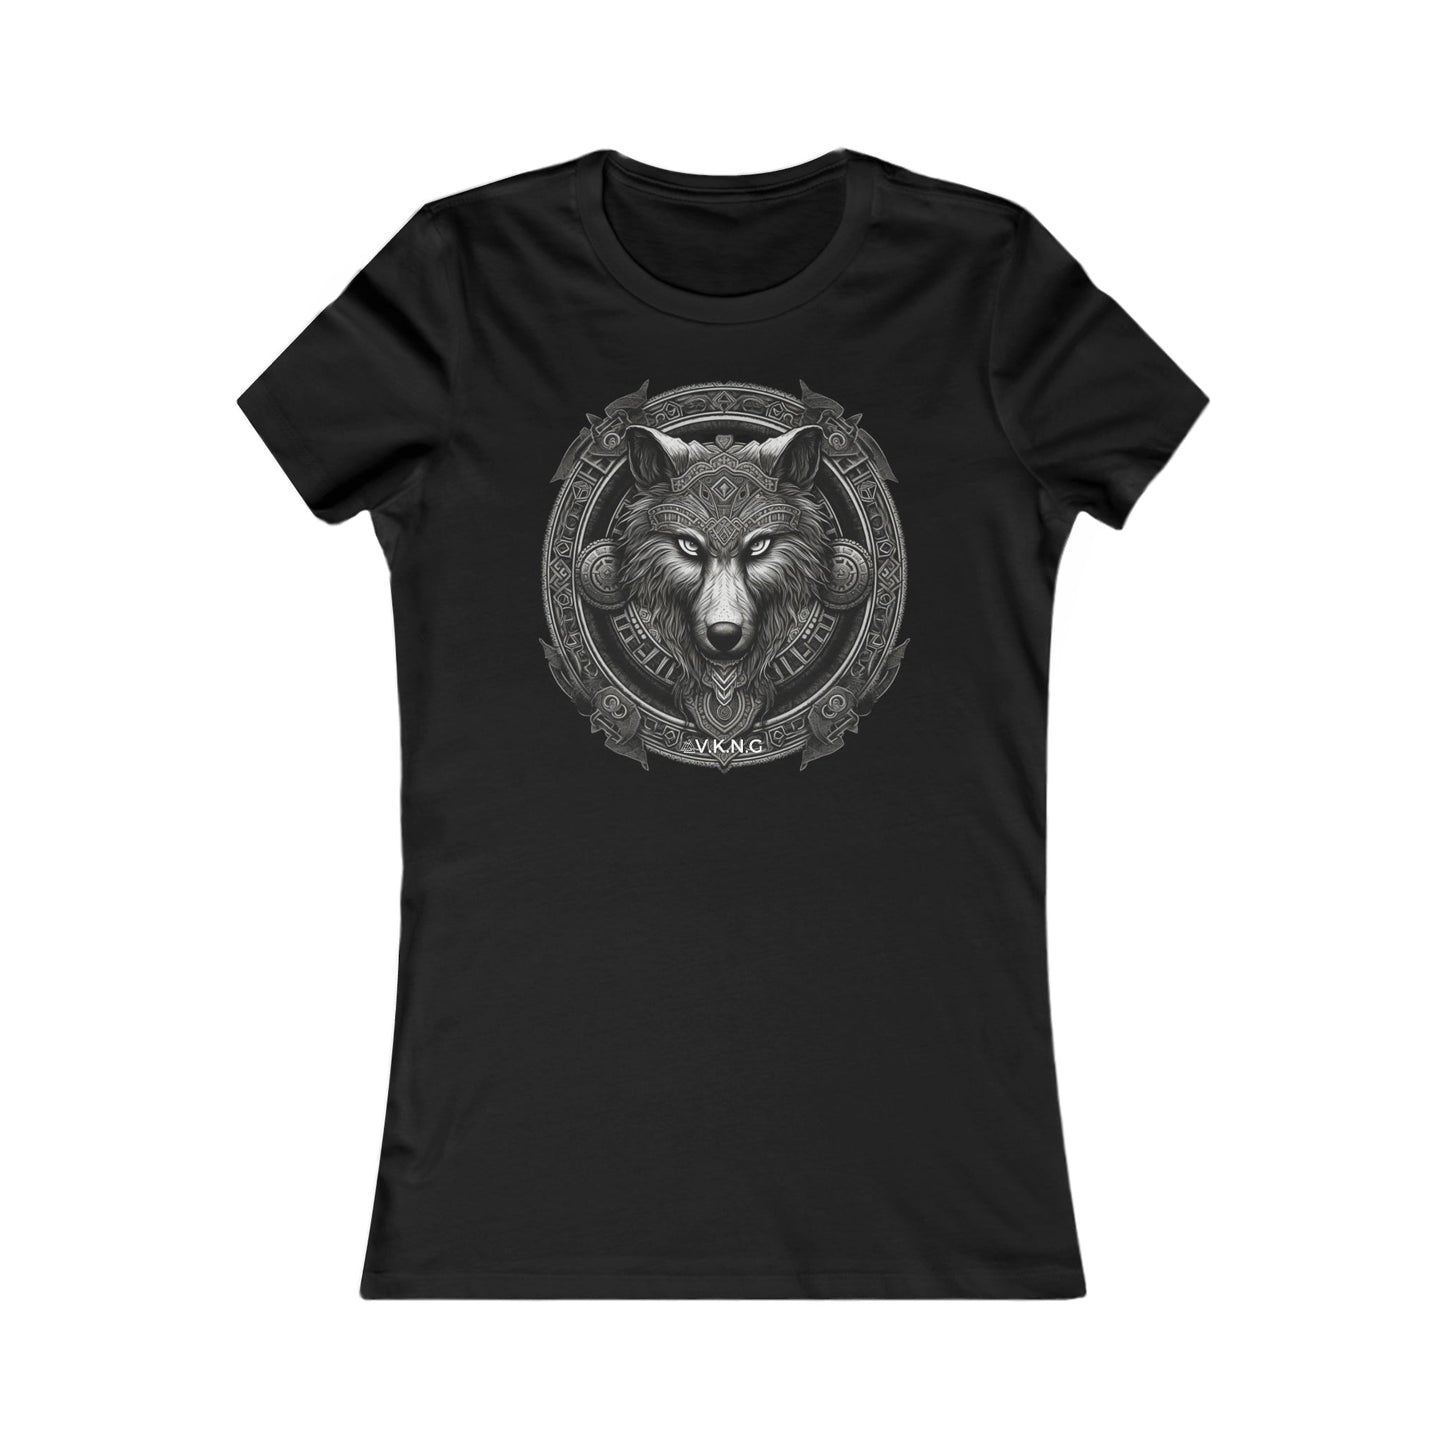 Printify T-Shirt Wolf V2  V.K.N.G™  Girly Cut